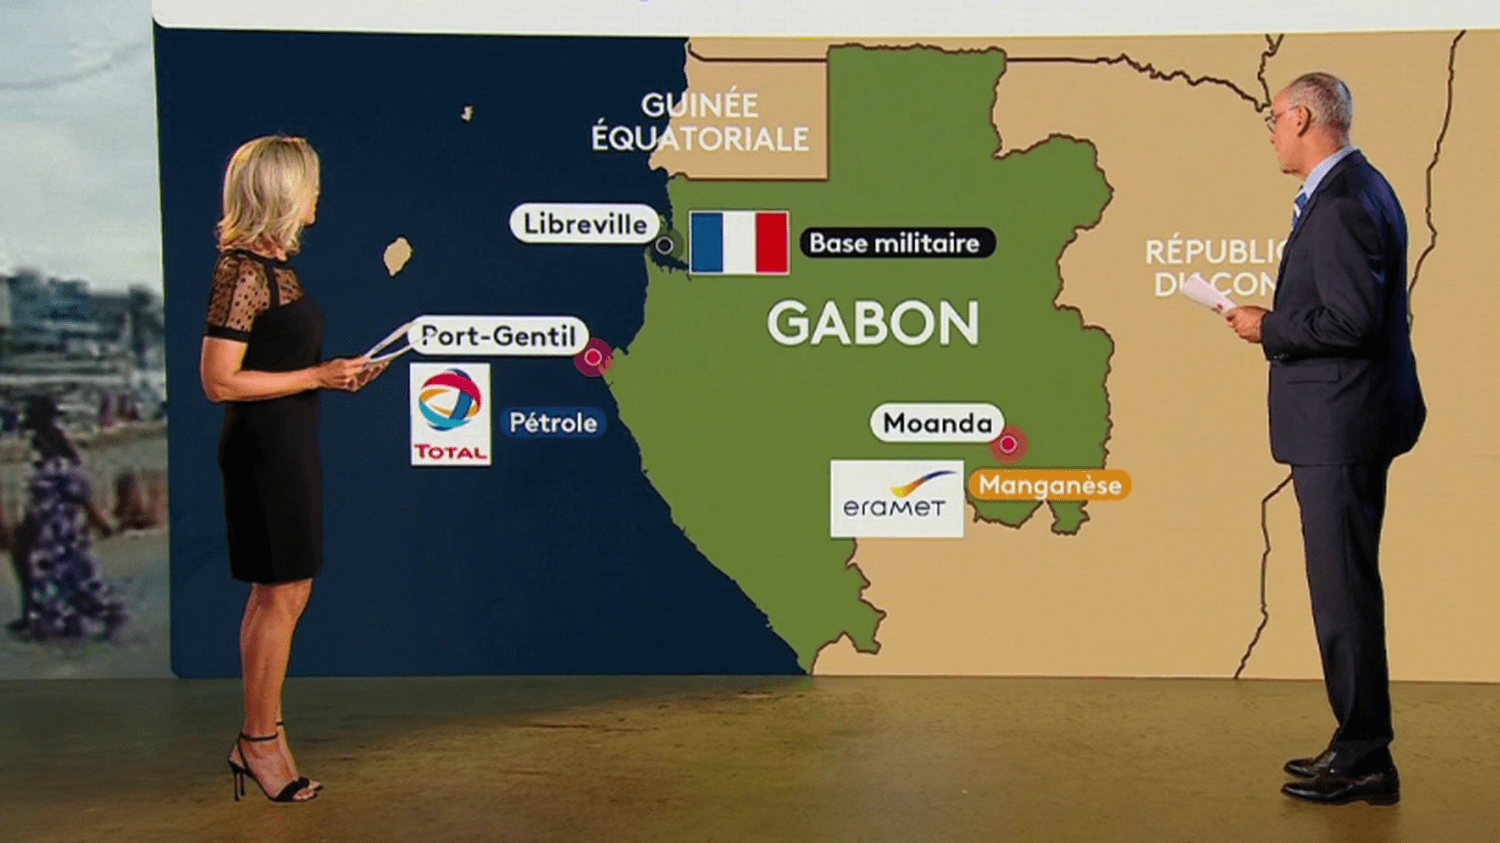 La France face à la crise gabonaise : liens étroits, intérêts économiques et présence militaire contestée